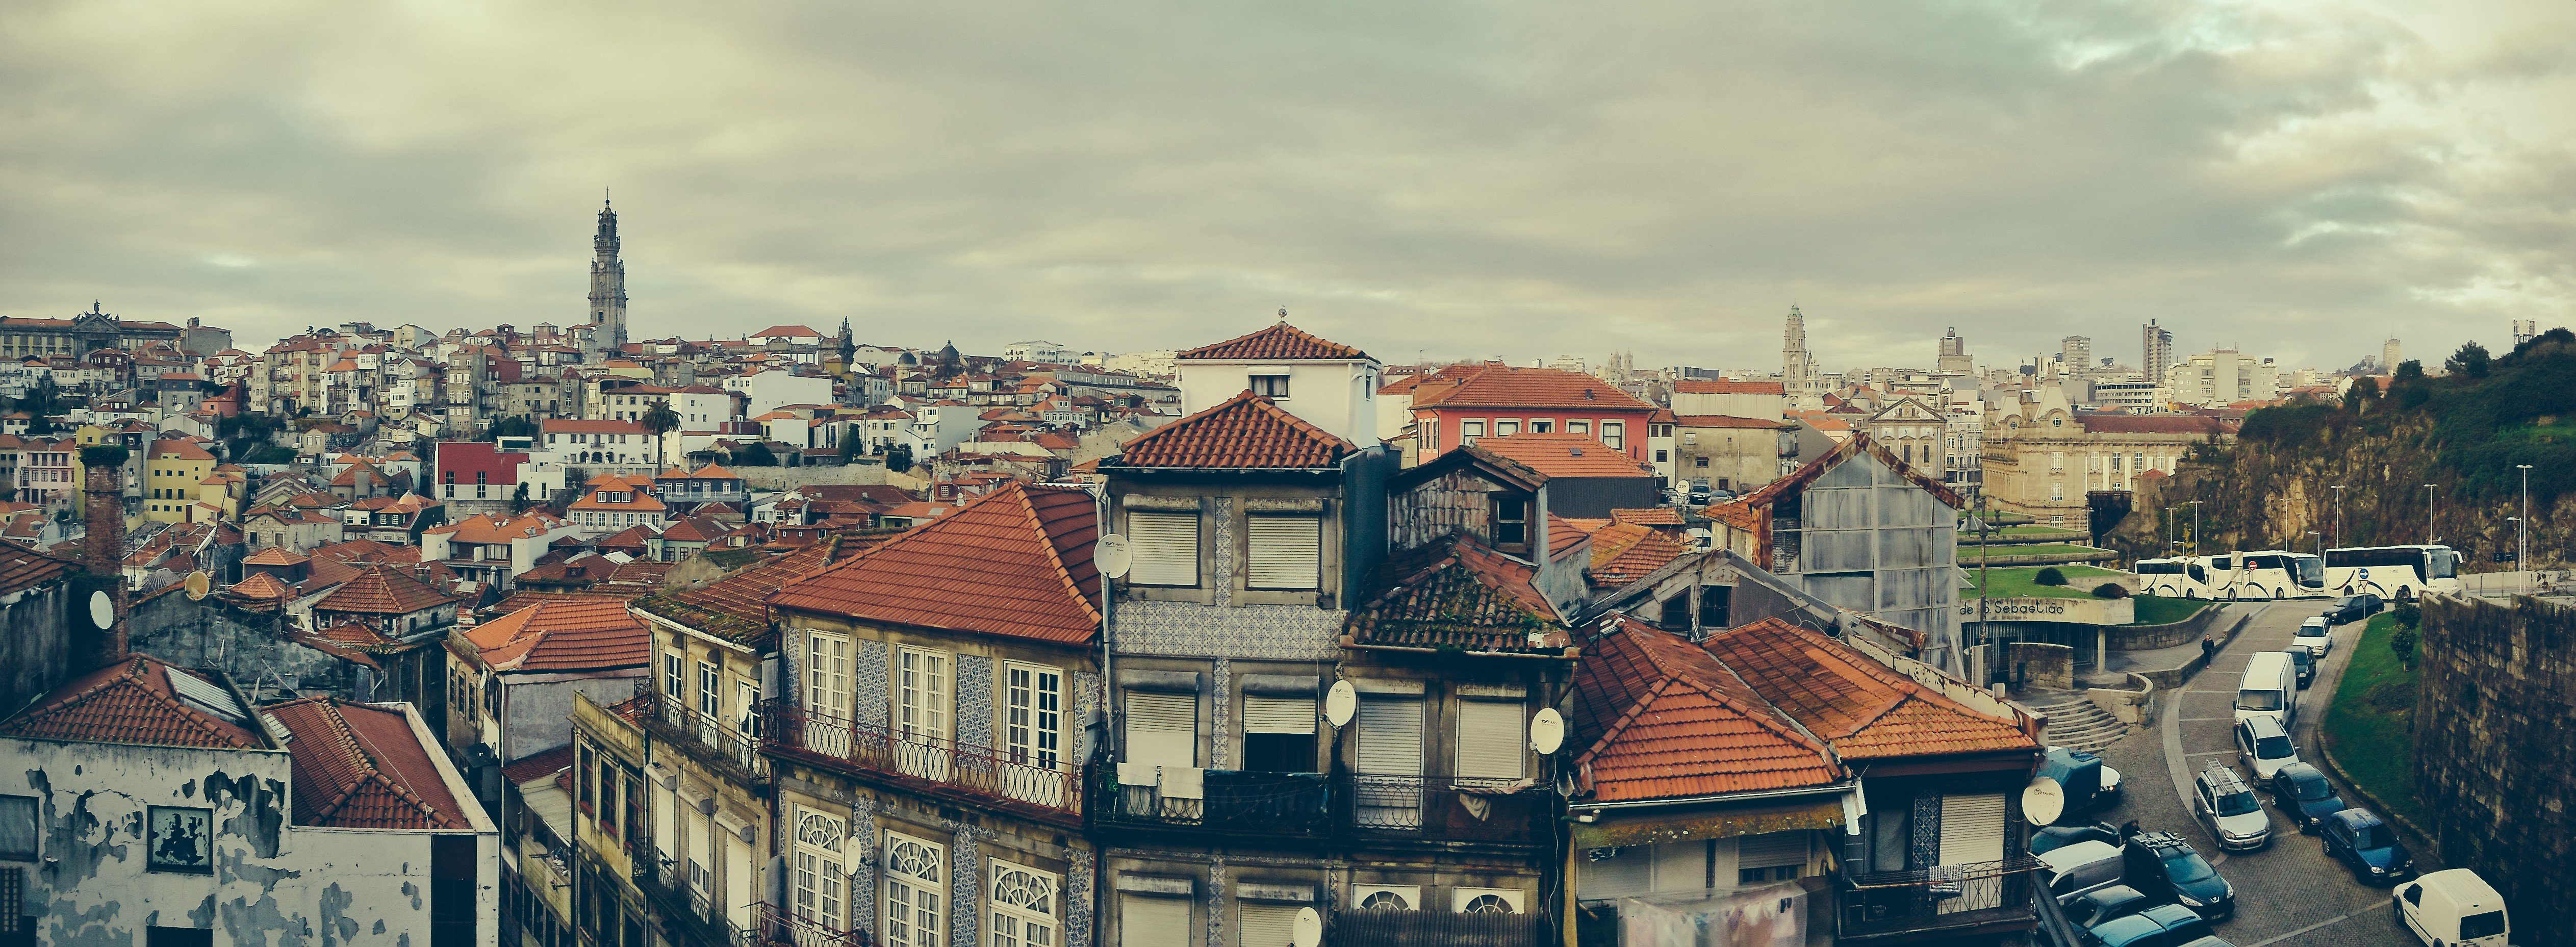 Porto, Architecture, Building Wallpaper